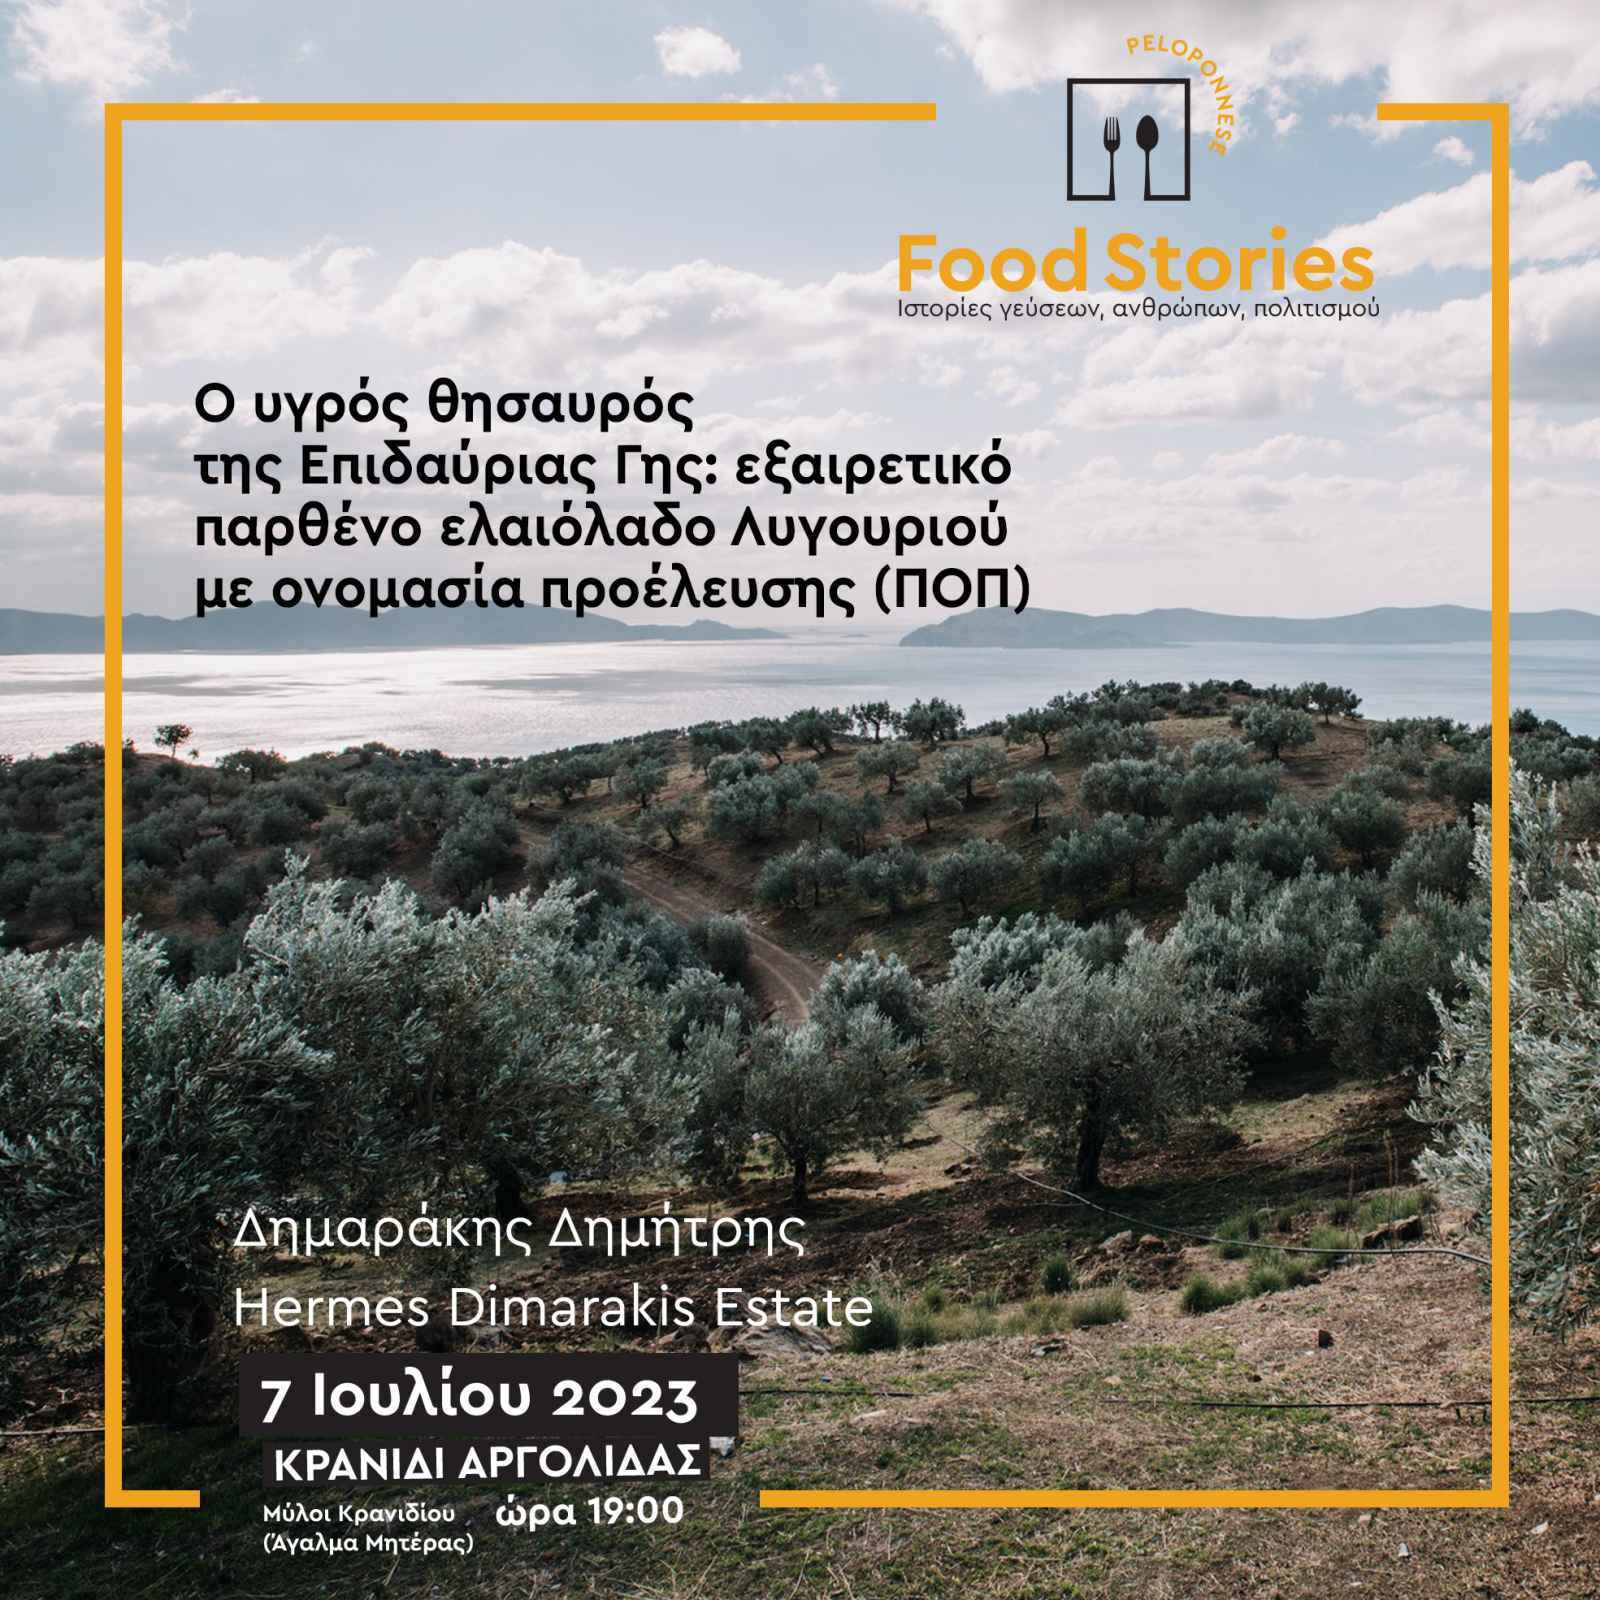 Ξεκινά αύριο Παρασκευή 7 Ιουλίου, στο Κρανίδι, η πρώτη φετινή εκδήλωση του 2ου Φεστιβάλ Γαστρονομίας Πελοποννήσου “Peloponnese Food Stories 2023 | Ιστορίες Γεύσεων, Ανθρώπων, Πολιτισμού”